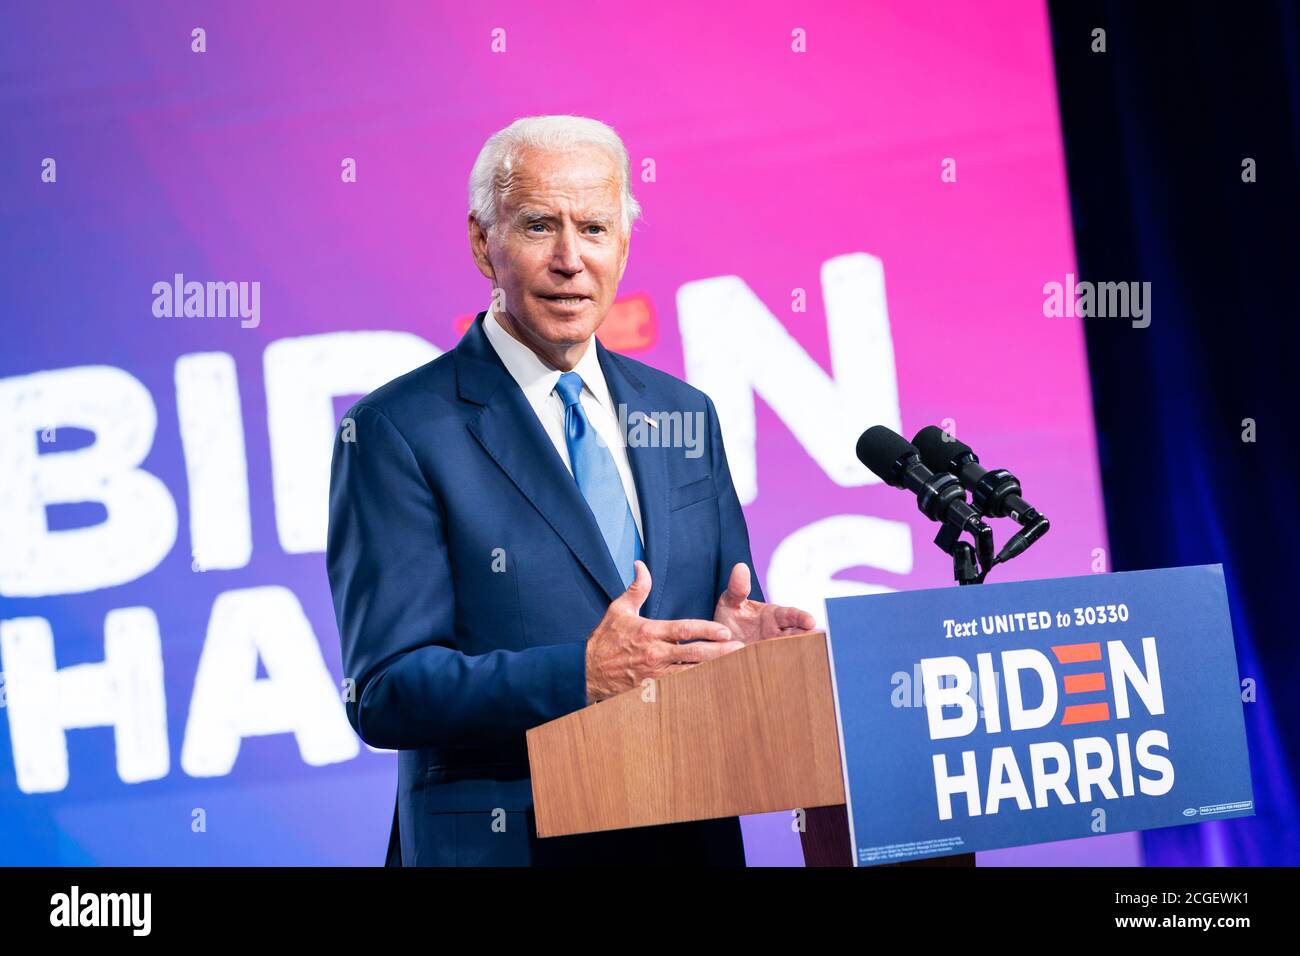 WILMINGTON, PA, USA - 02. September 2020 - der demokratische US-Präsidentschaftskandidat Joe Biden bei einer Pressekonferenz zum Thema "über die Wiedereröffnung der sicheren Schule" in Stockfoto